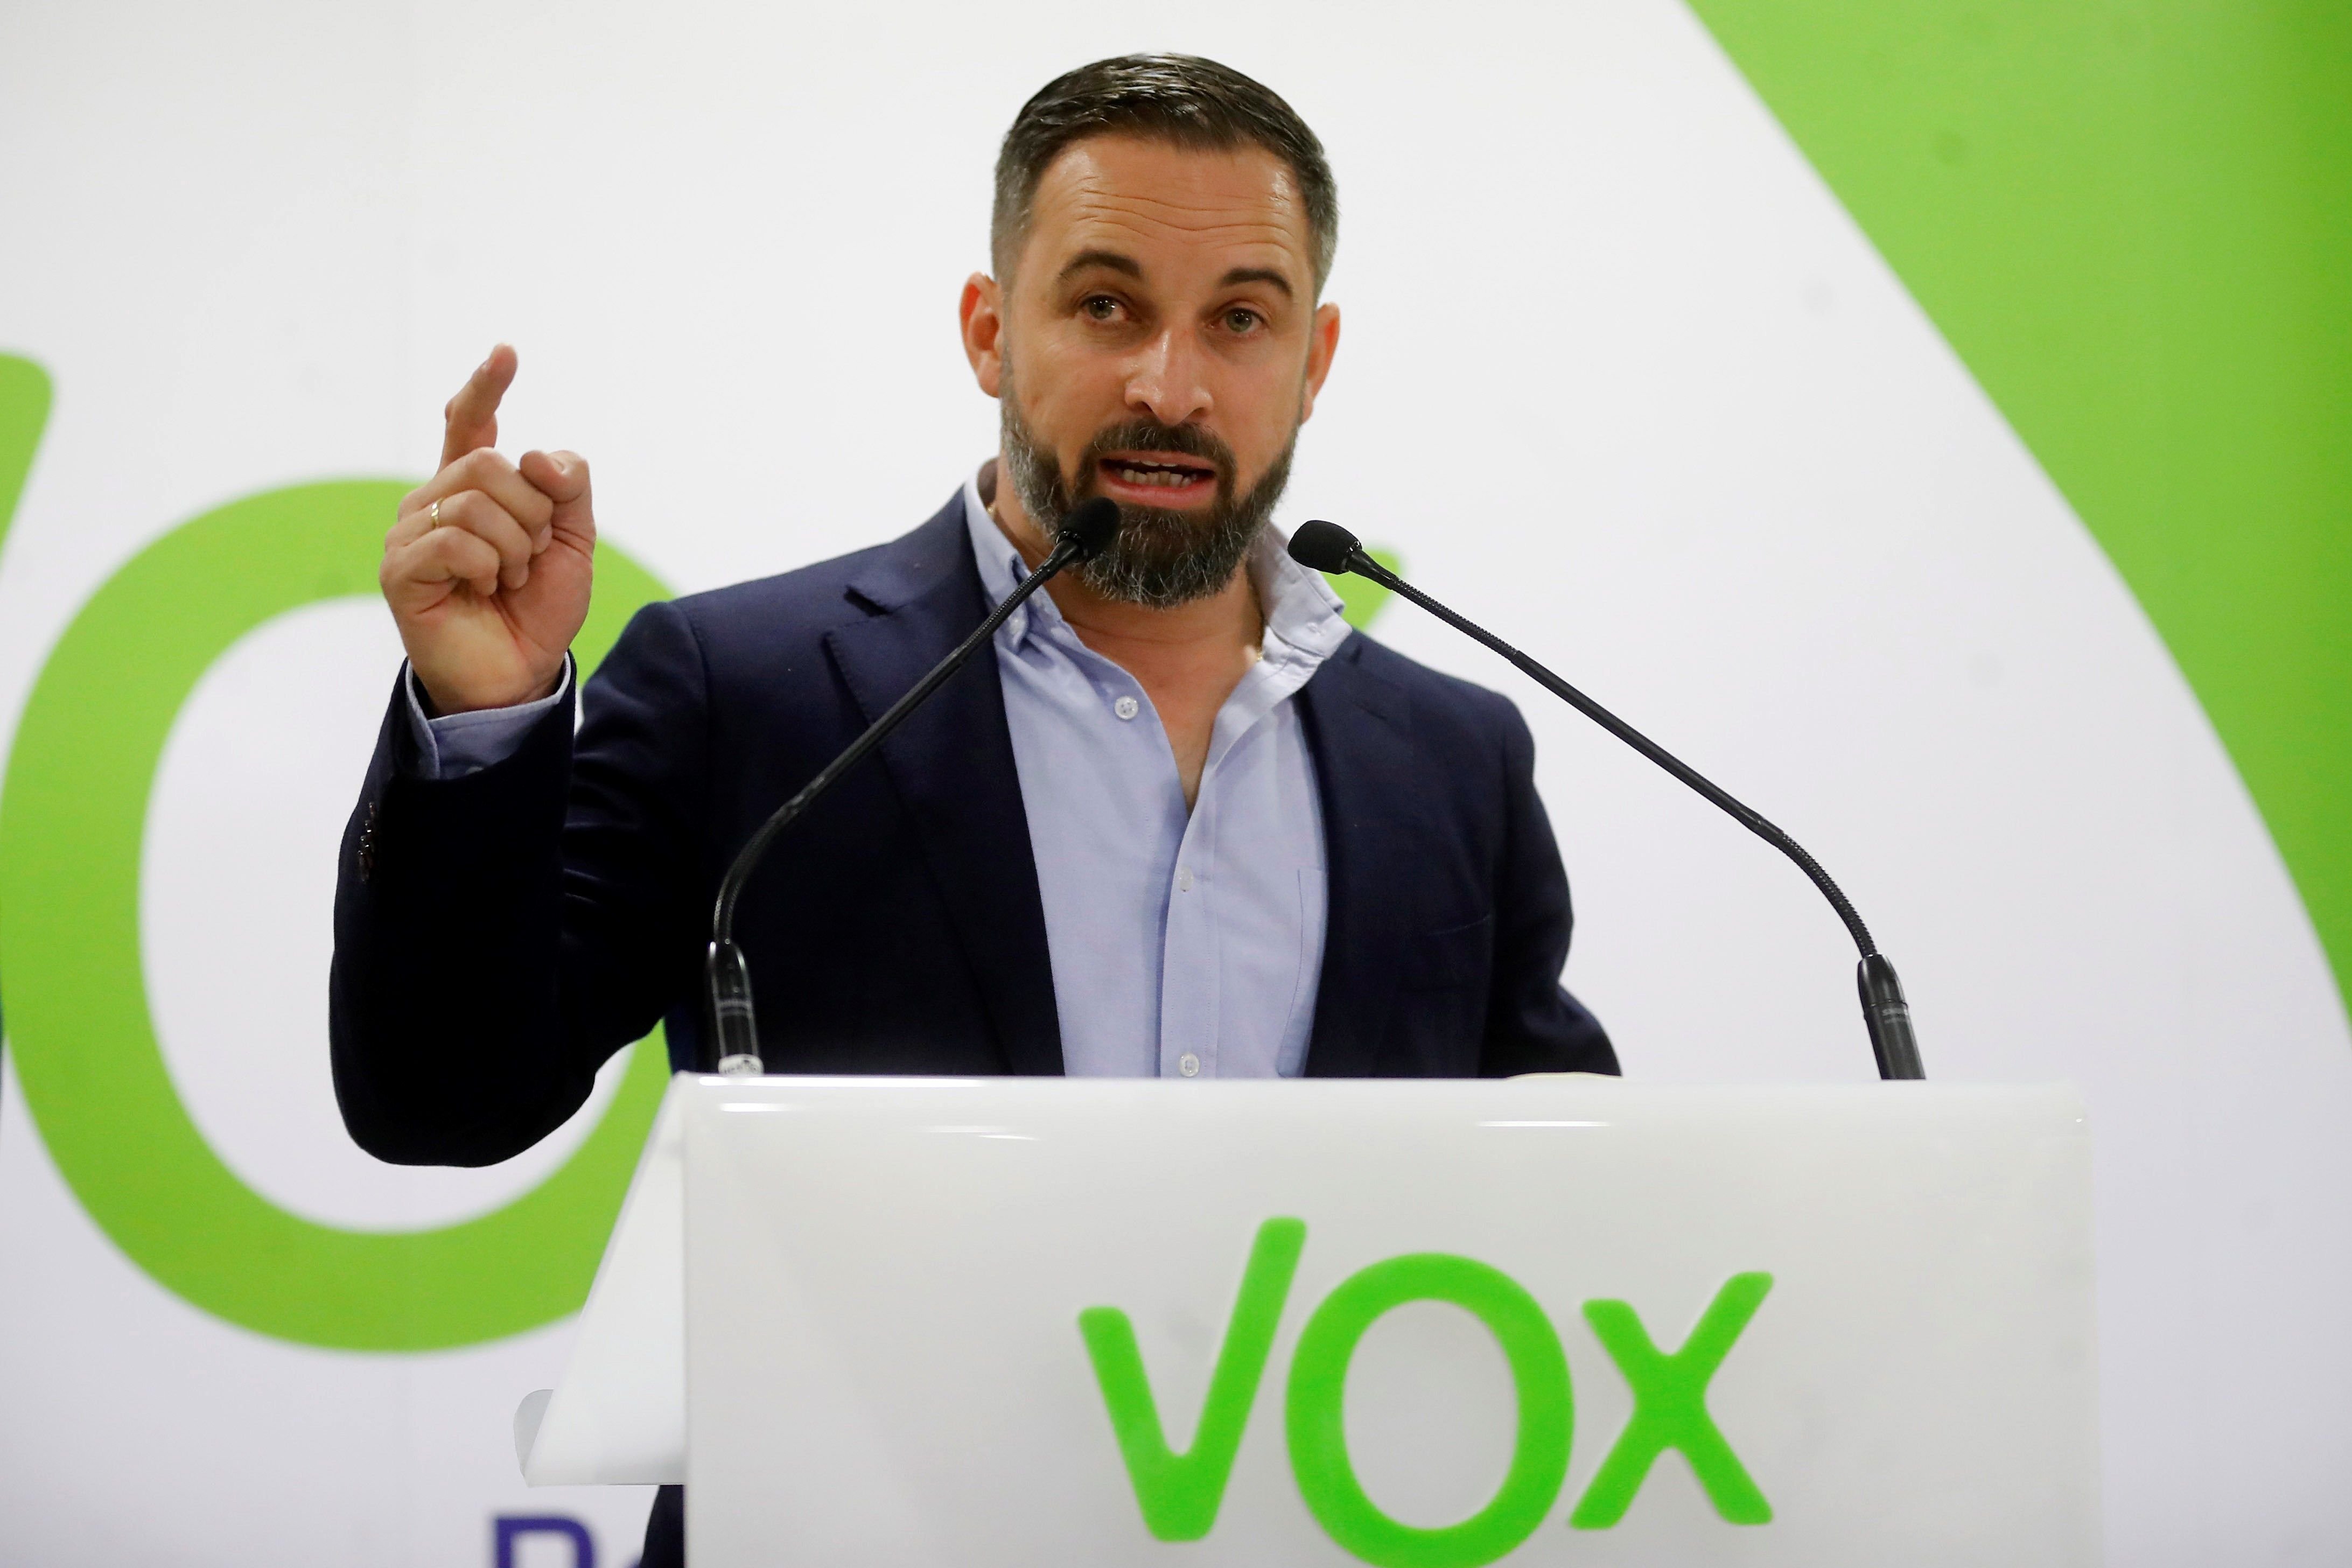 Vox exigirá como condición entrar en los gobiernos del PP y Cs